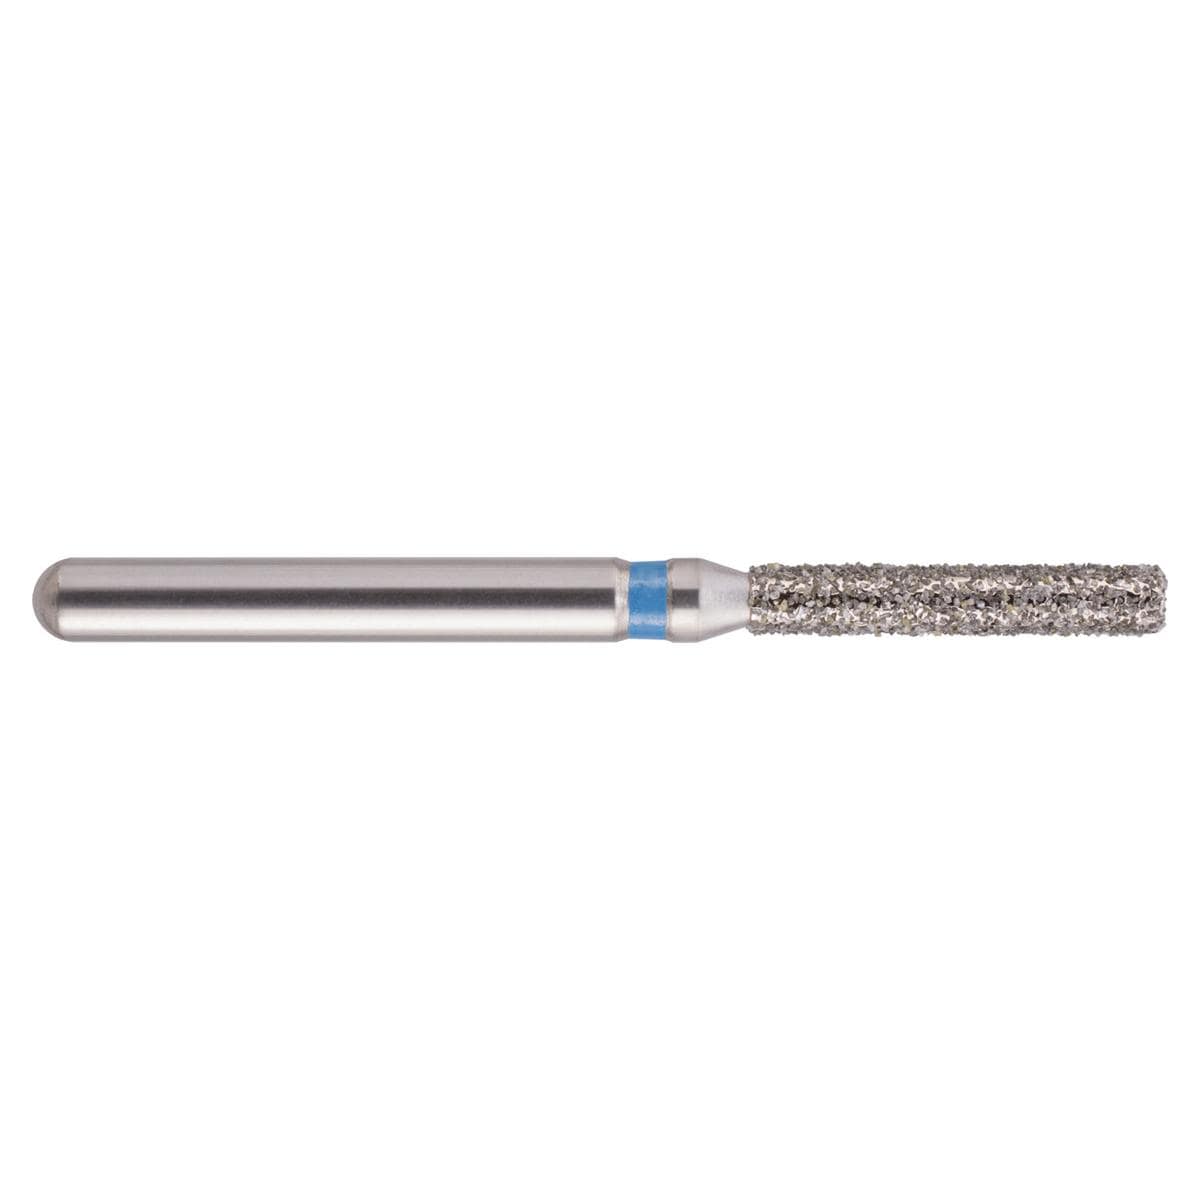 NeoDiamond FG, Form 111, Zylinder flach - ISO 014, mittel (blau), Packung 10 Stück